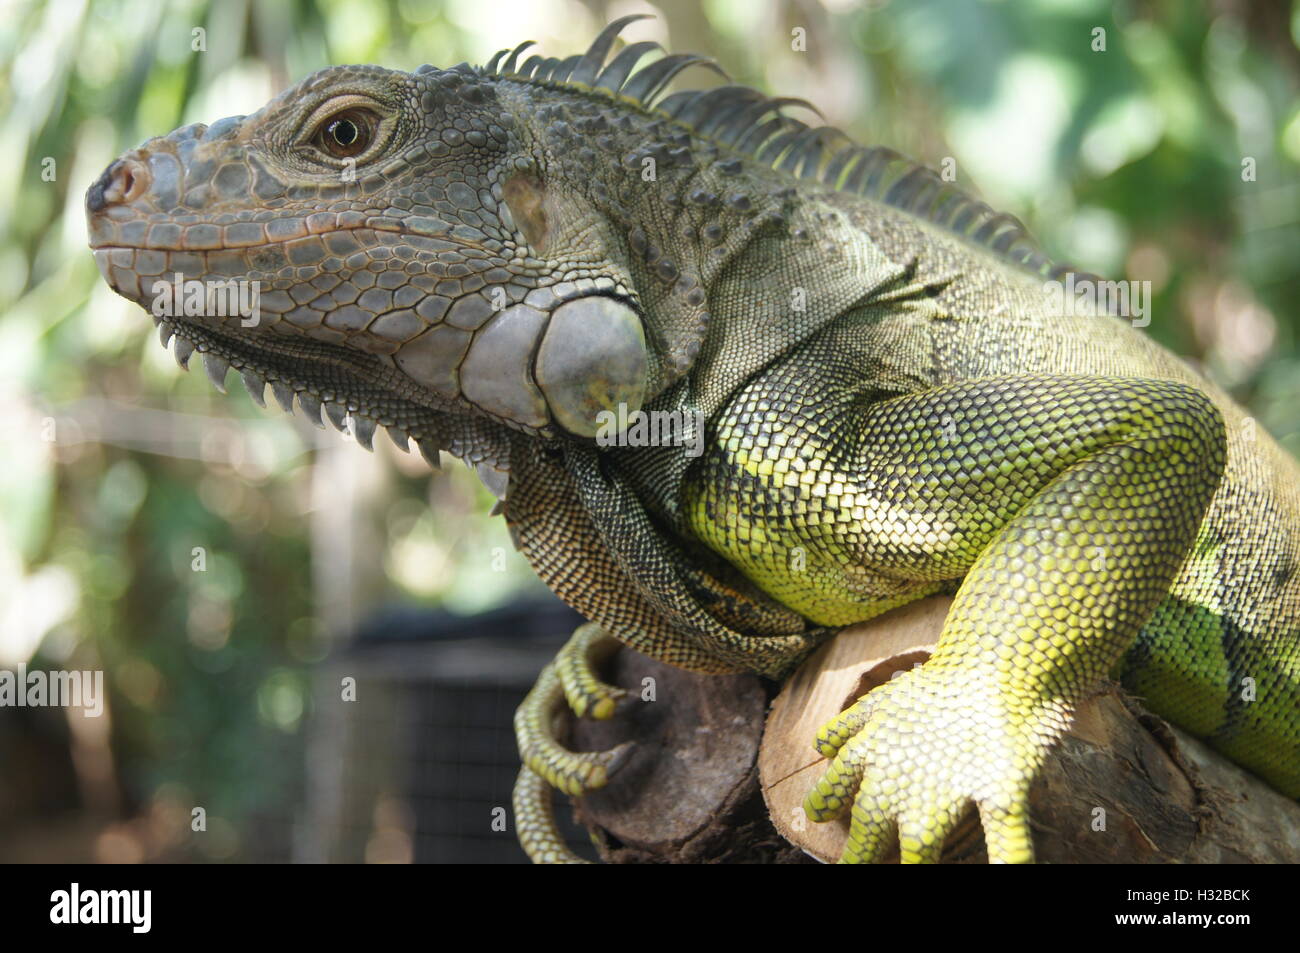 Up-close on lizard at Bali Stock Photo - Alamy